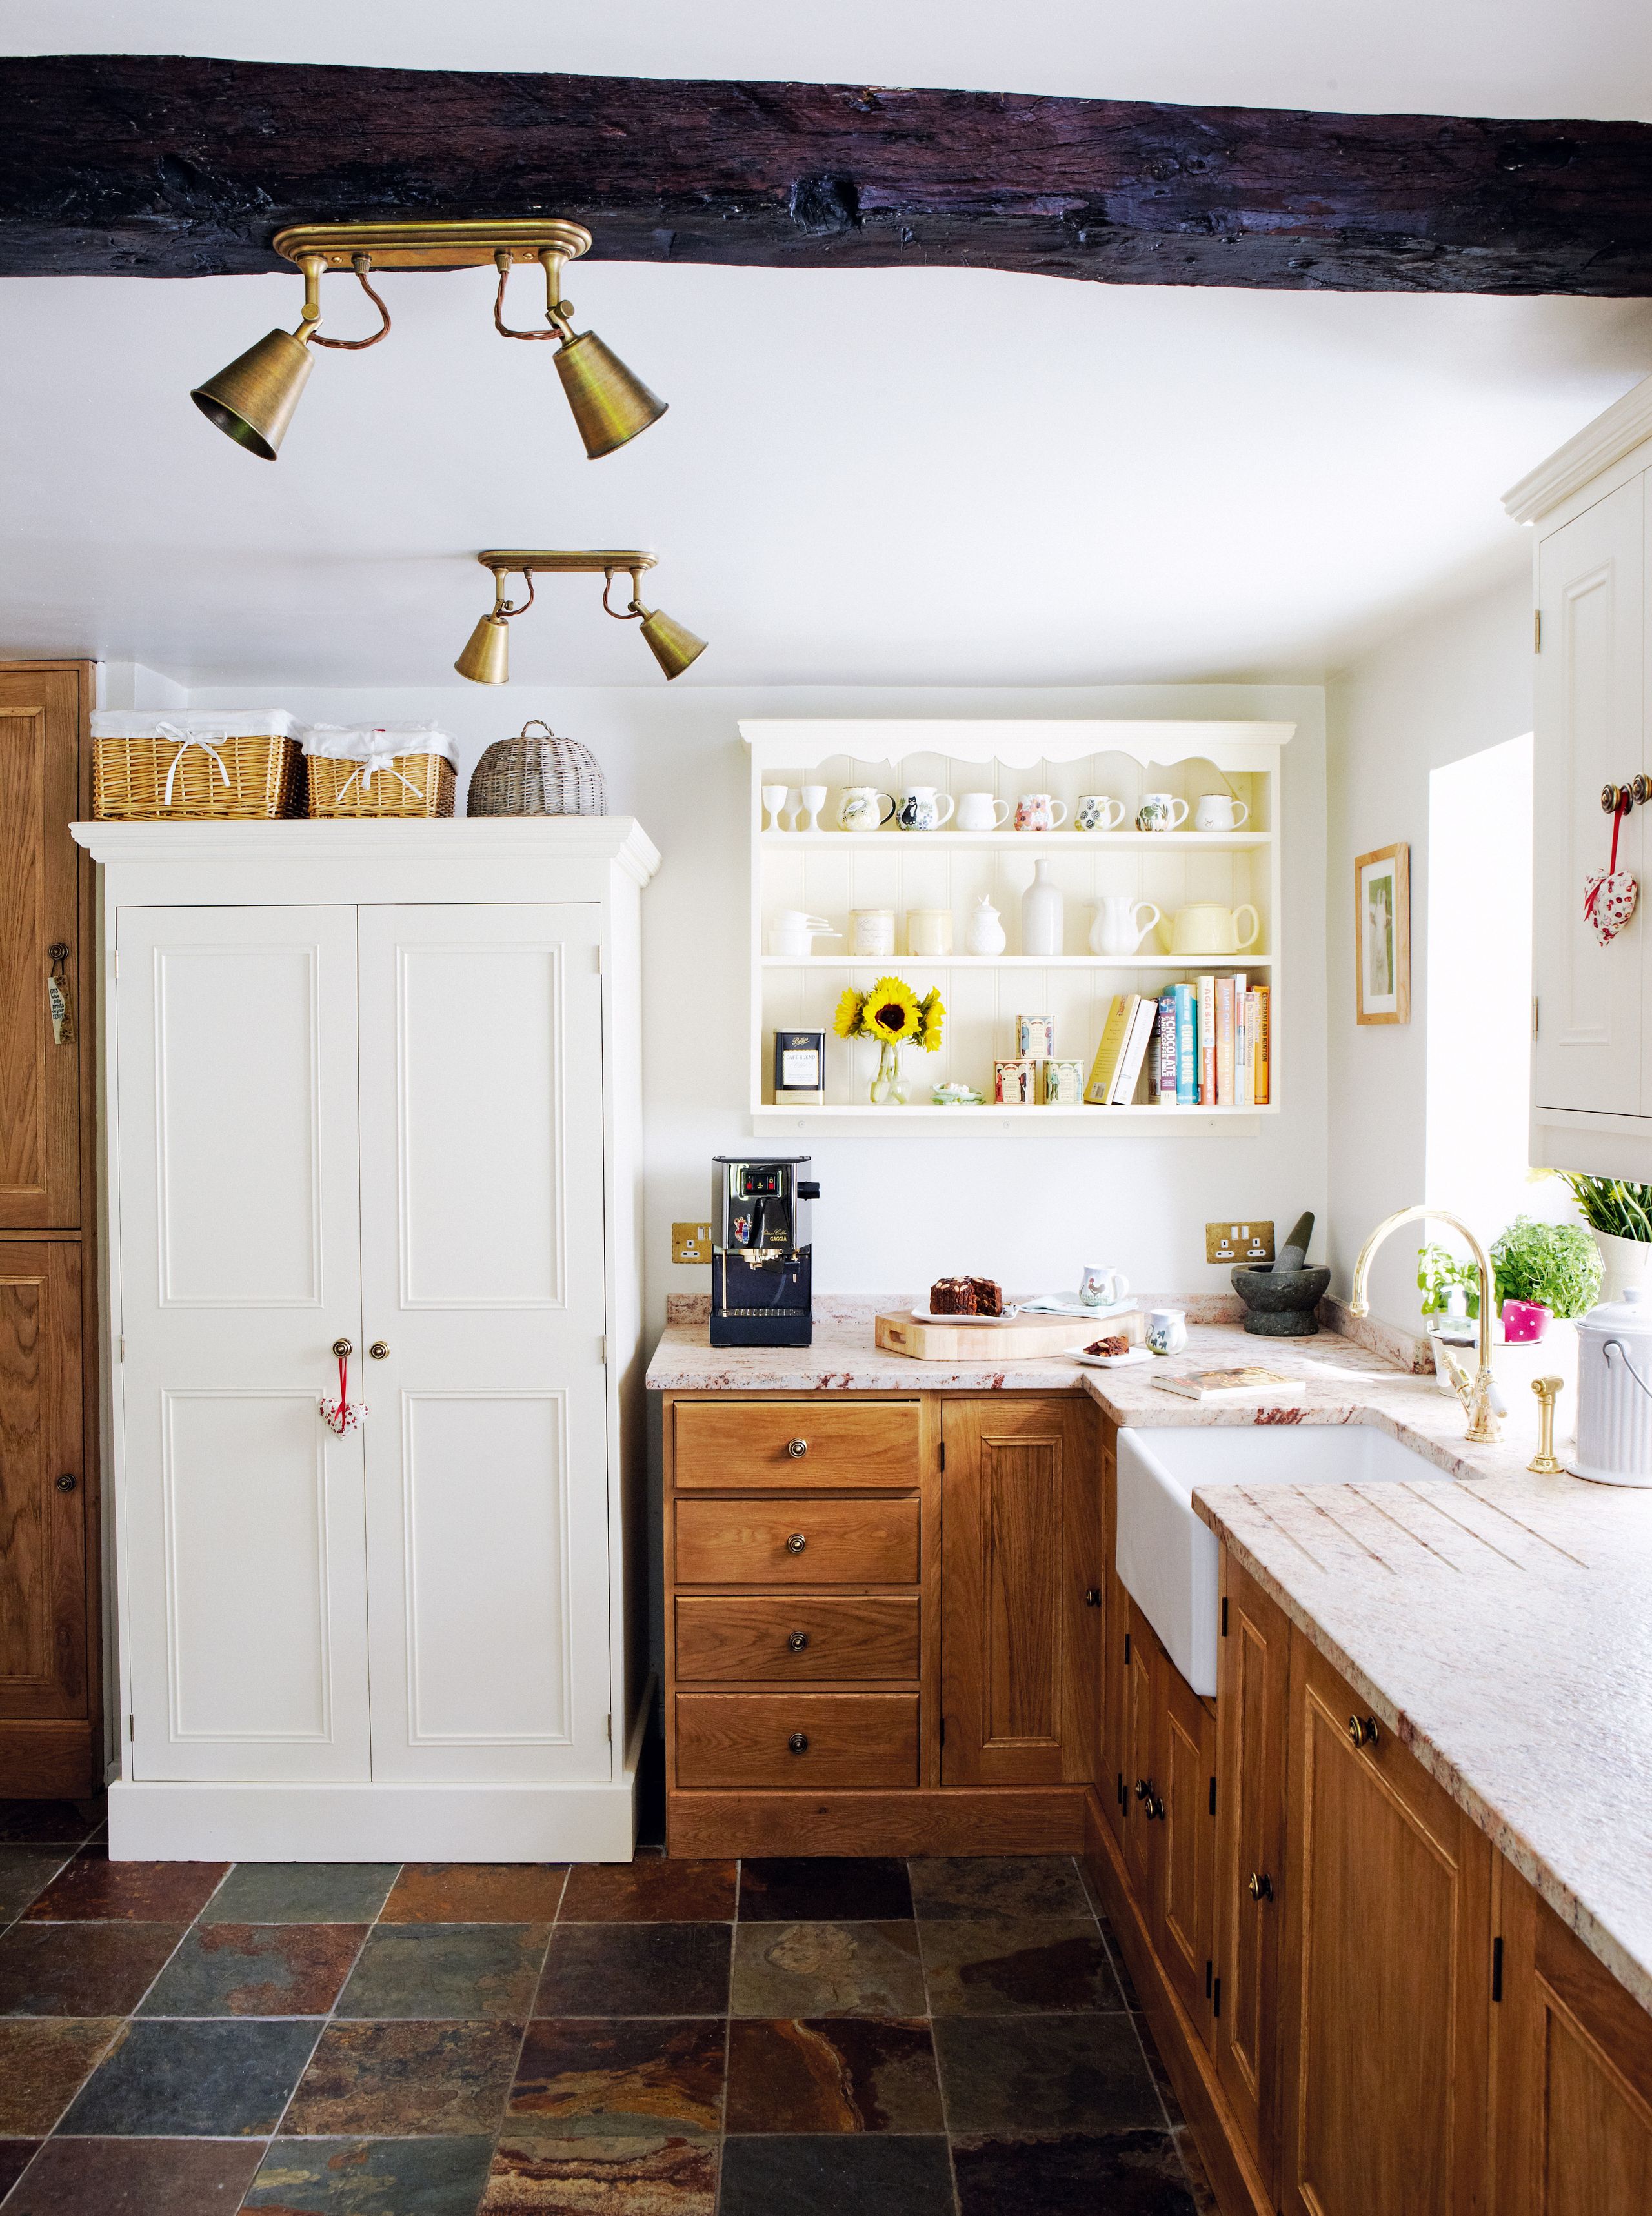 Uma mistura natural de madeira e mobiliário pintado neste Yorkshire quinta cozinha